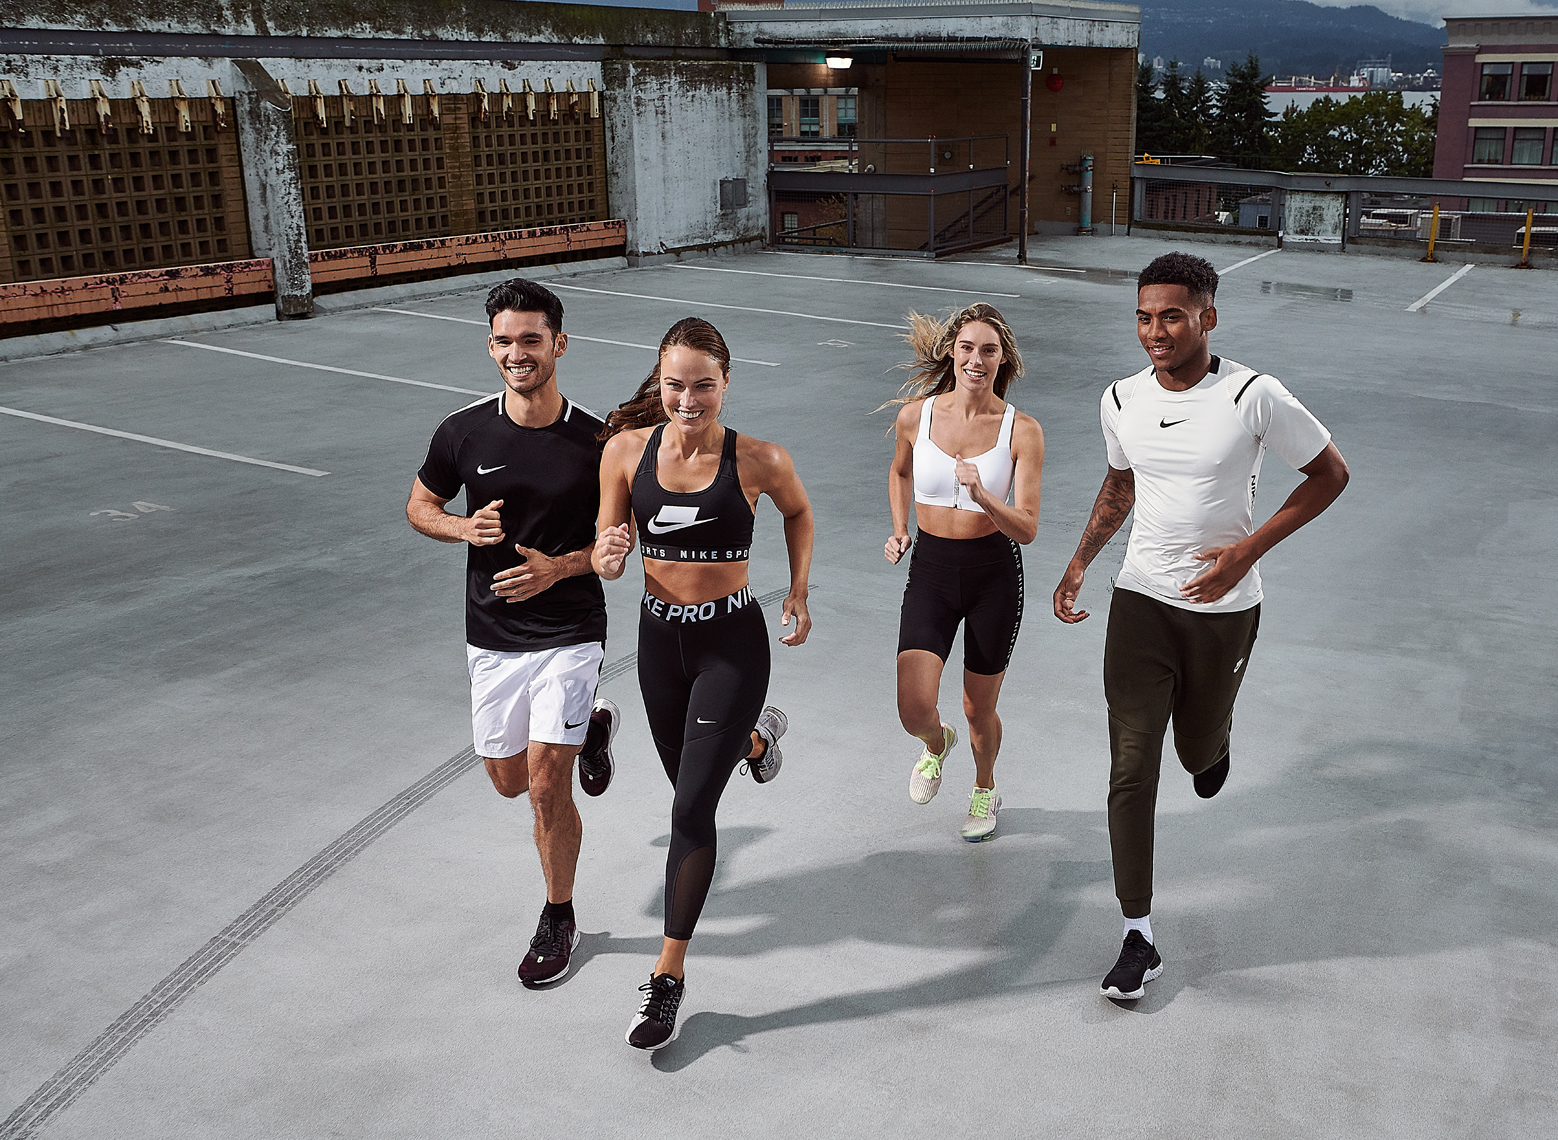 2019-Vancouver-SportsandFitness-Photographer-ErichSaide-Advertising-Nike-RichardsModels-Lifestyle-NikePro